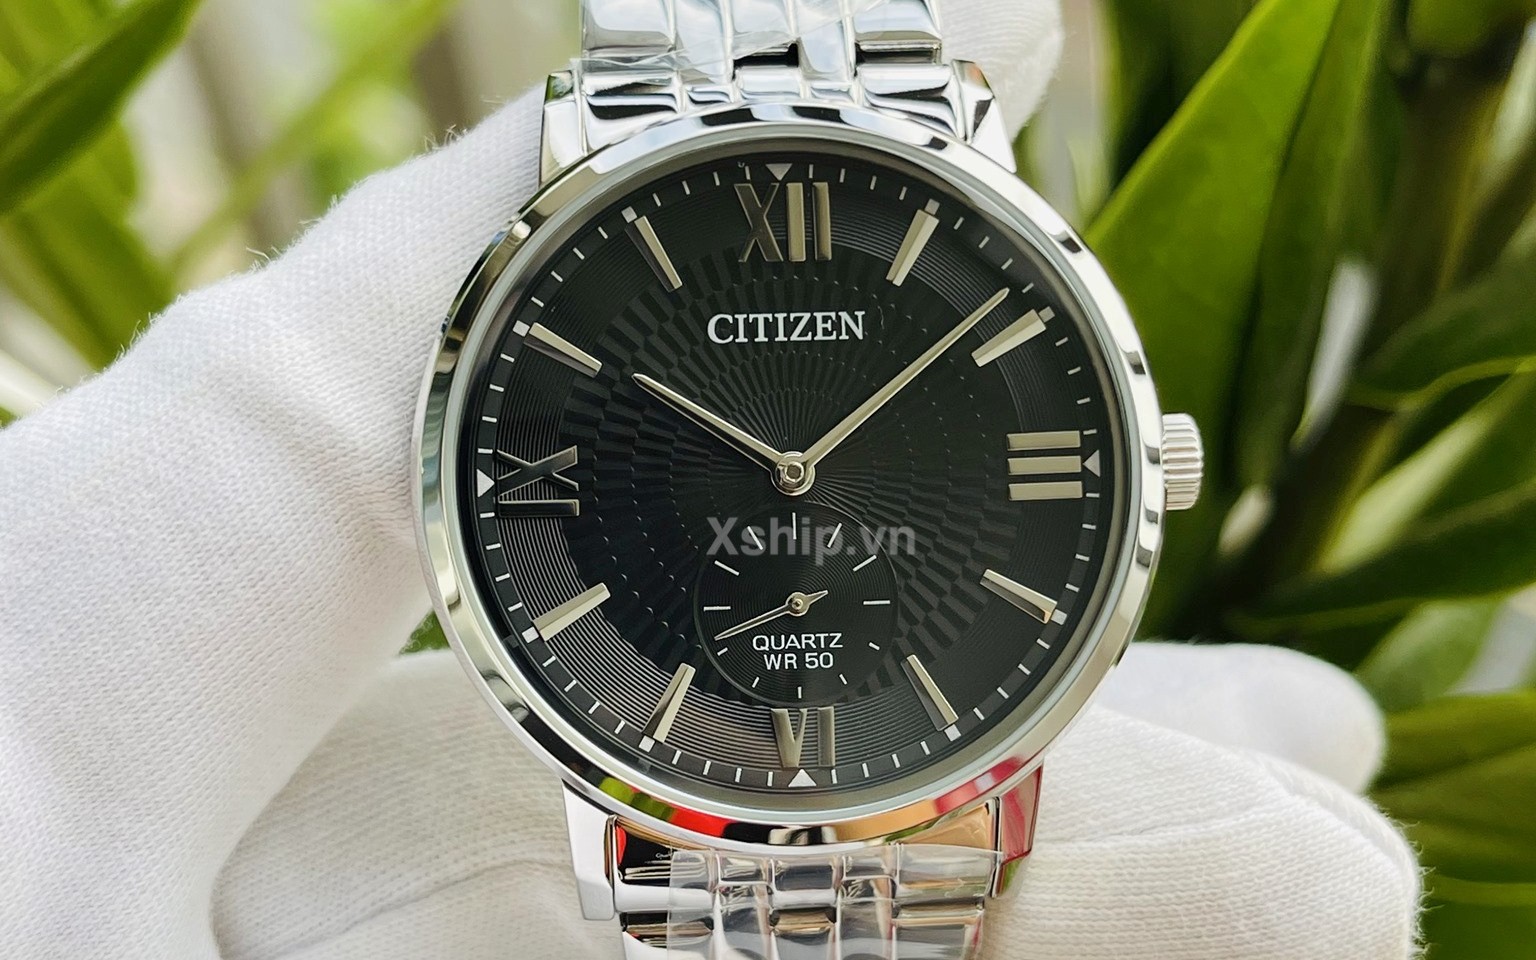 Bộ sưu tập đồng hồ Citizen BE917 đang có sẵn tại Xship.vn